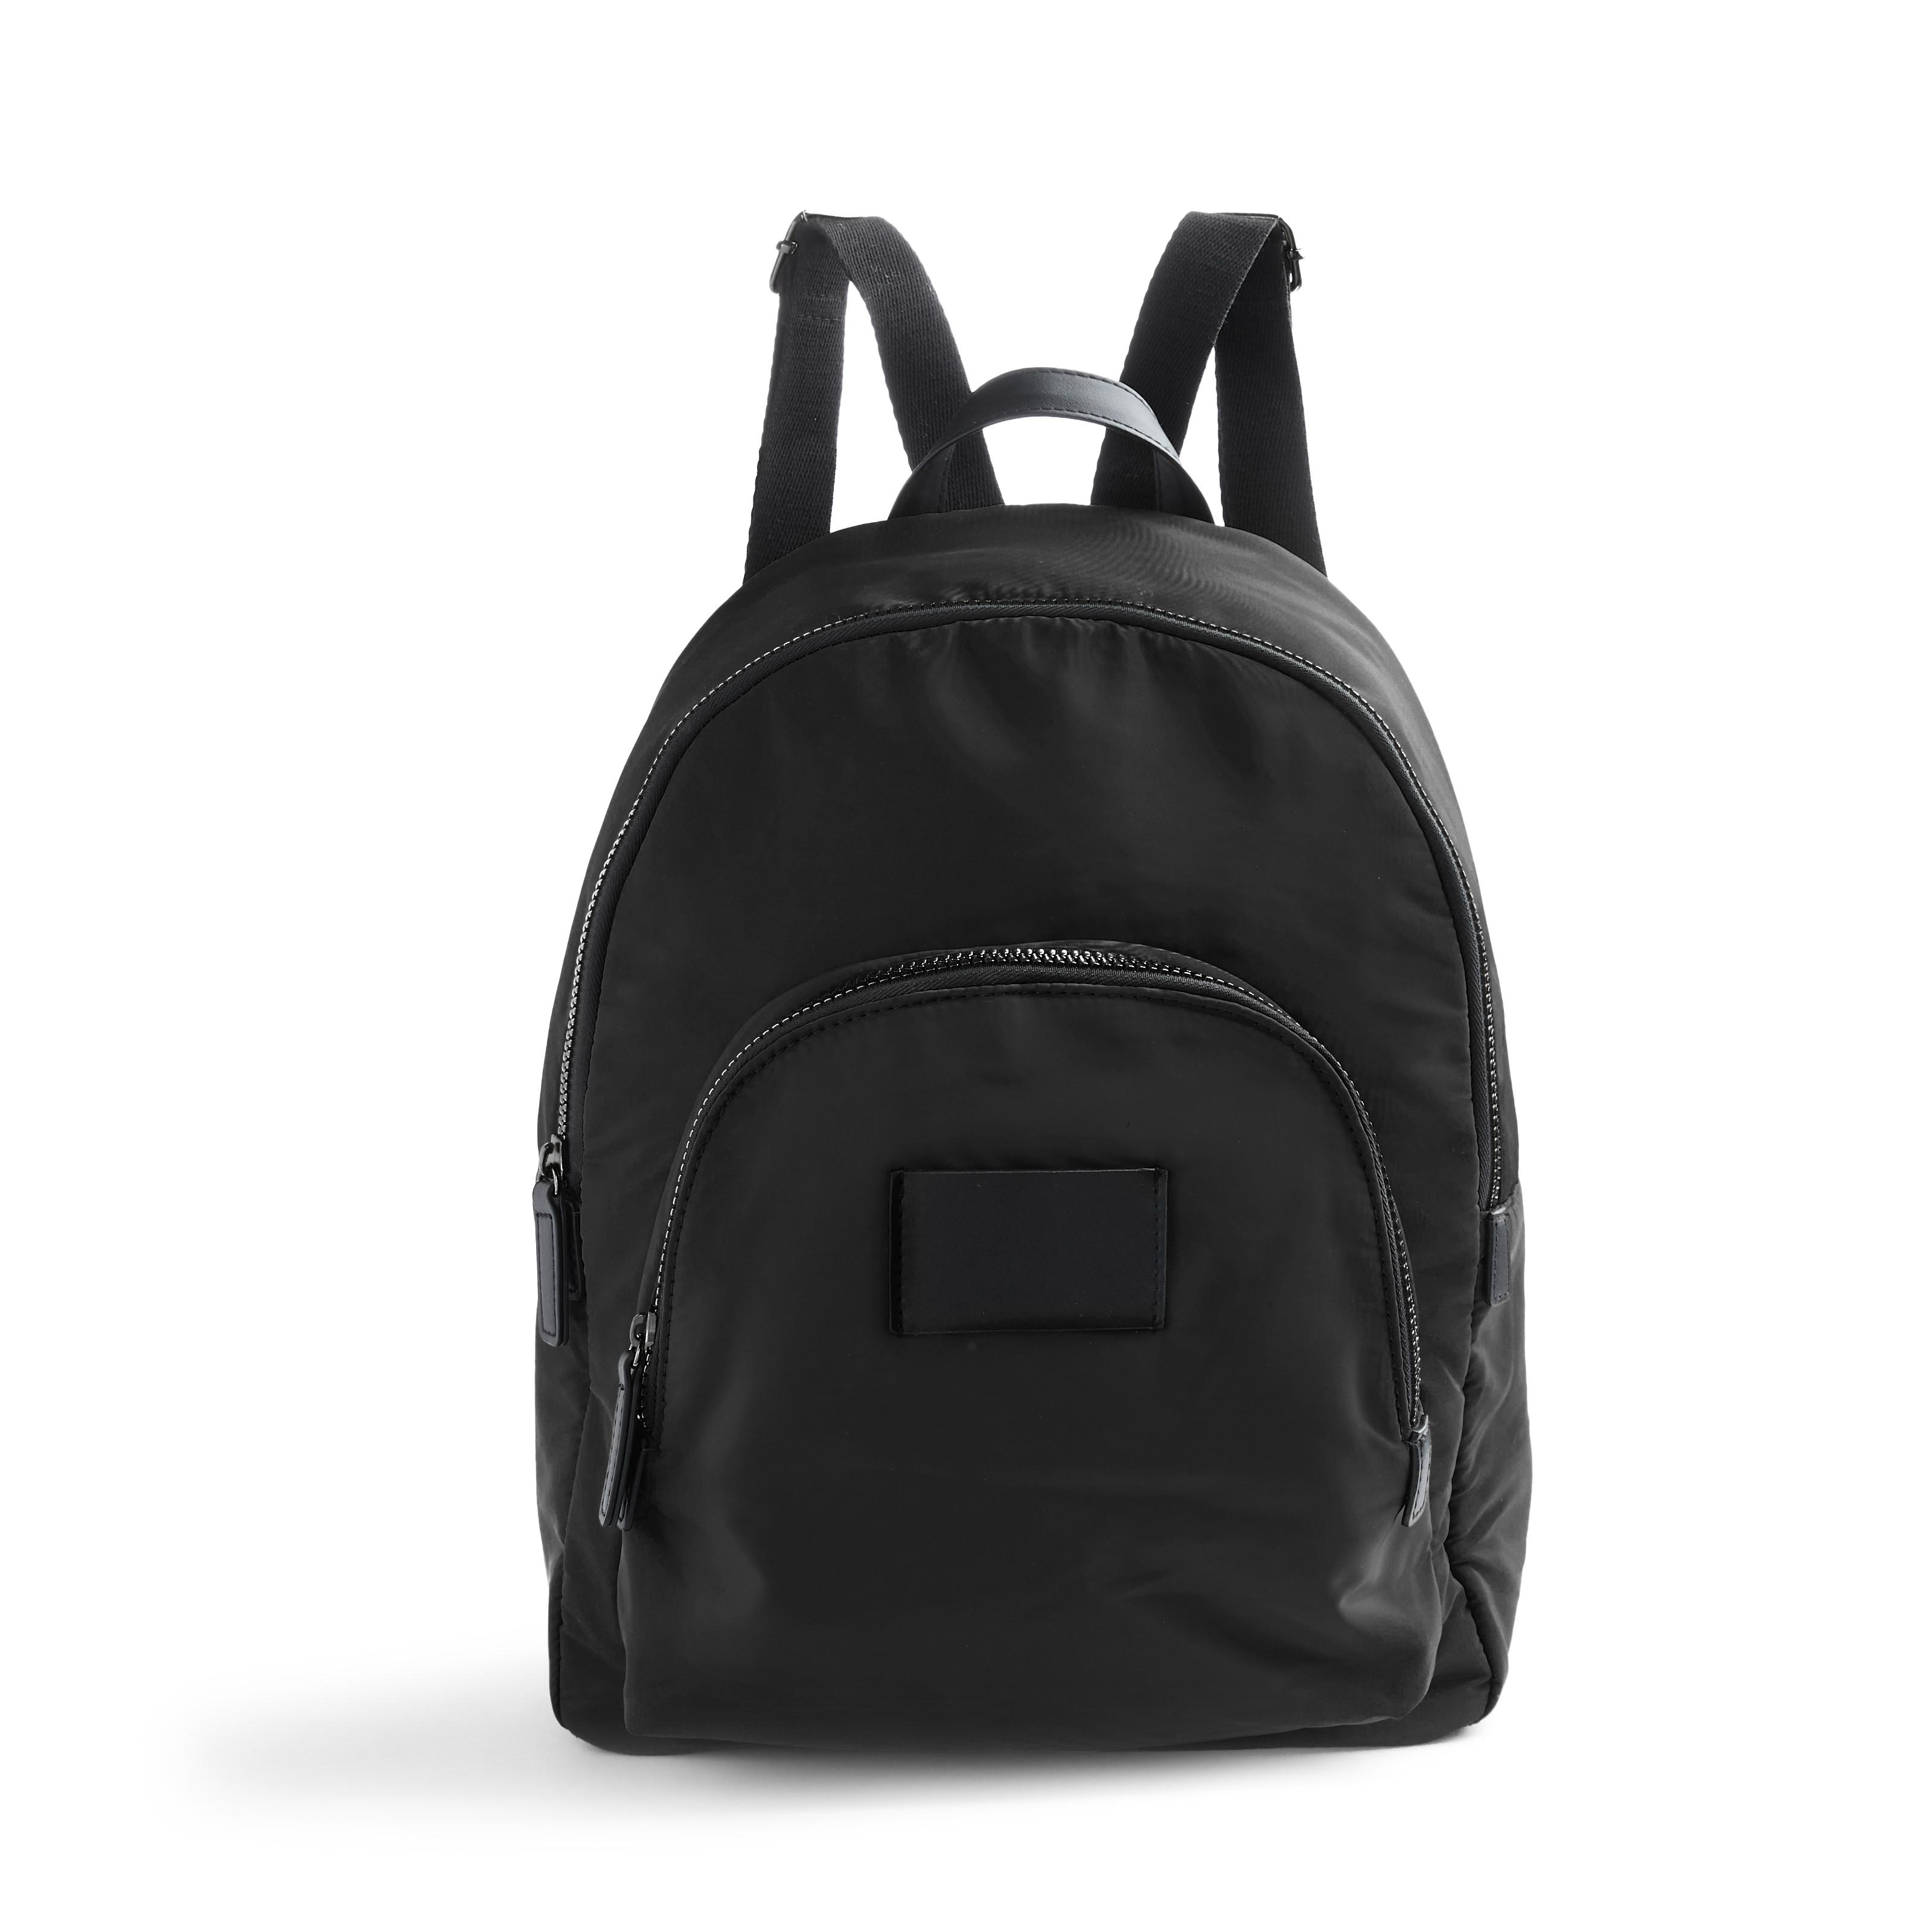 Black Nylon Curved Backpack | Women's Backpacks | Women's Handbags ...